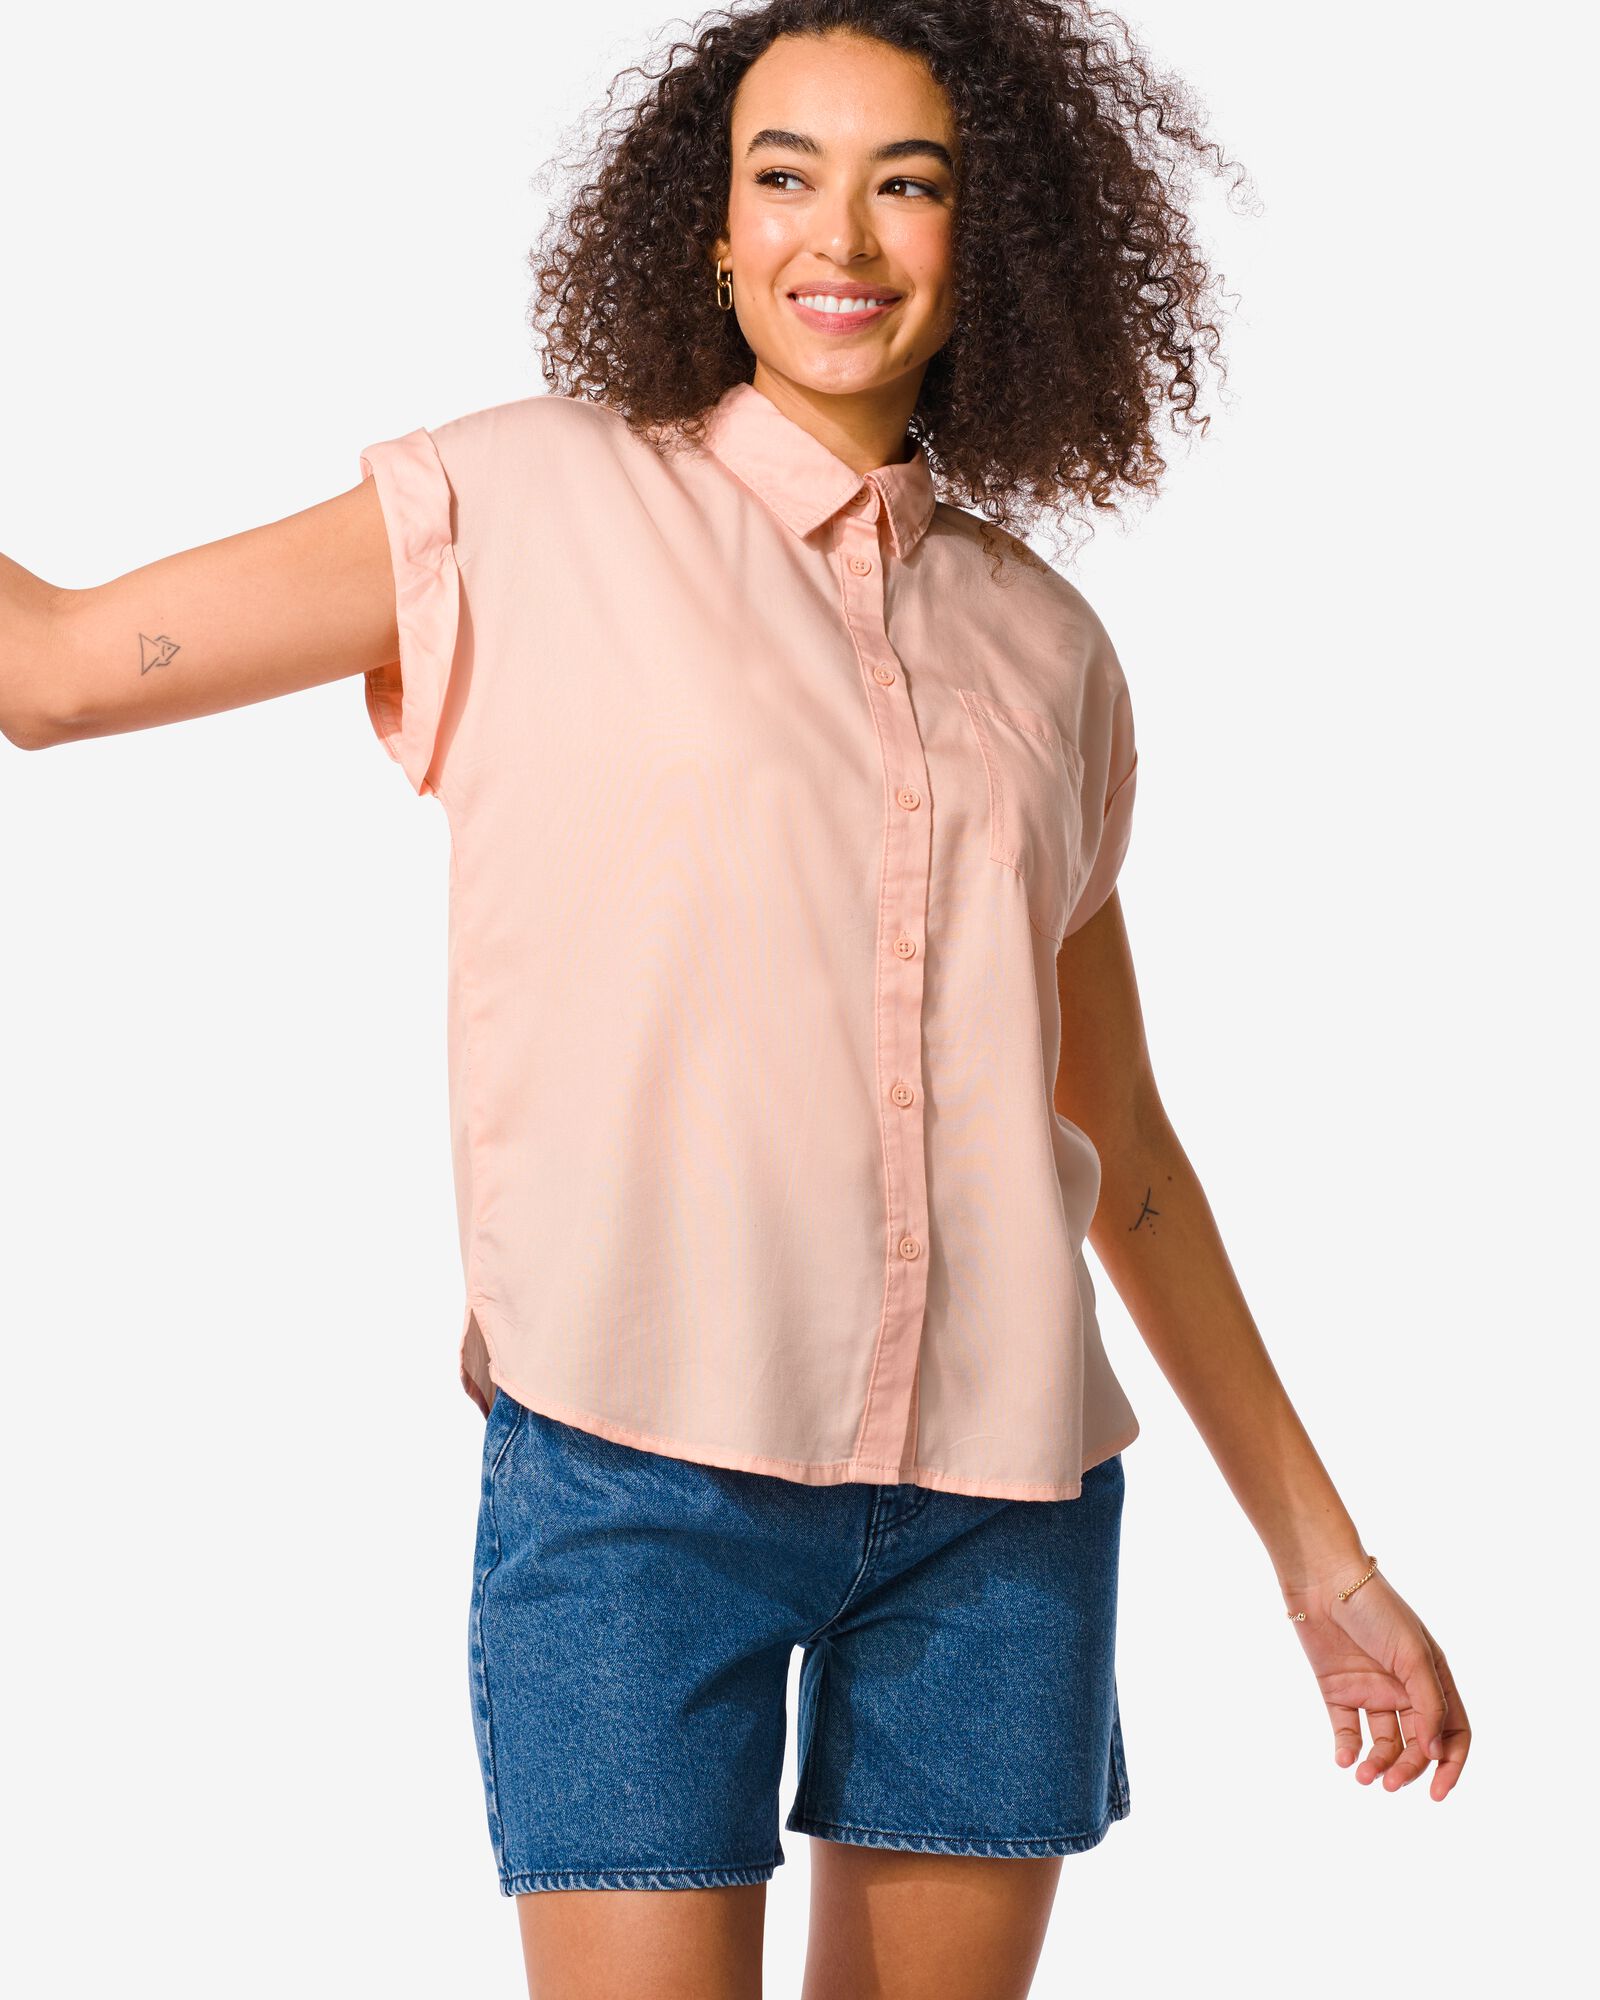 dames blouse Tina roze - 1000031151 - HEMA